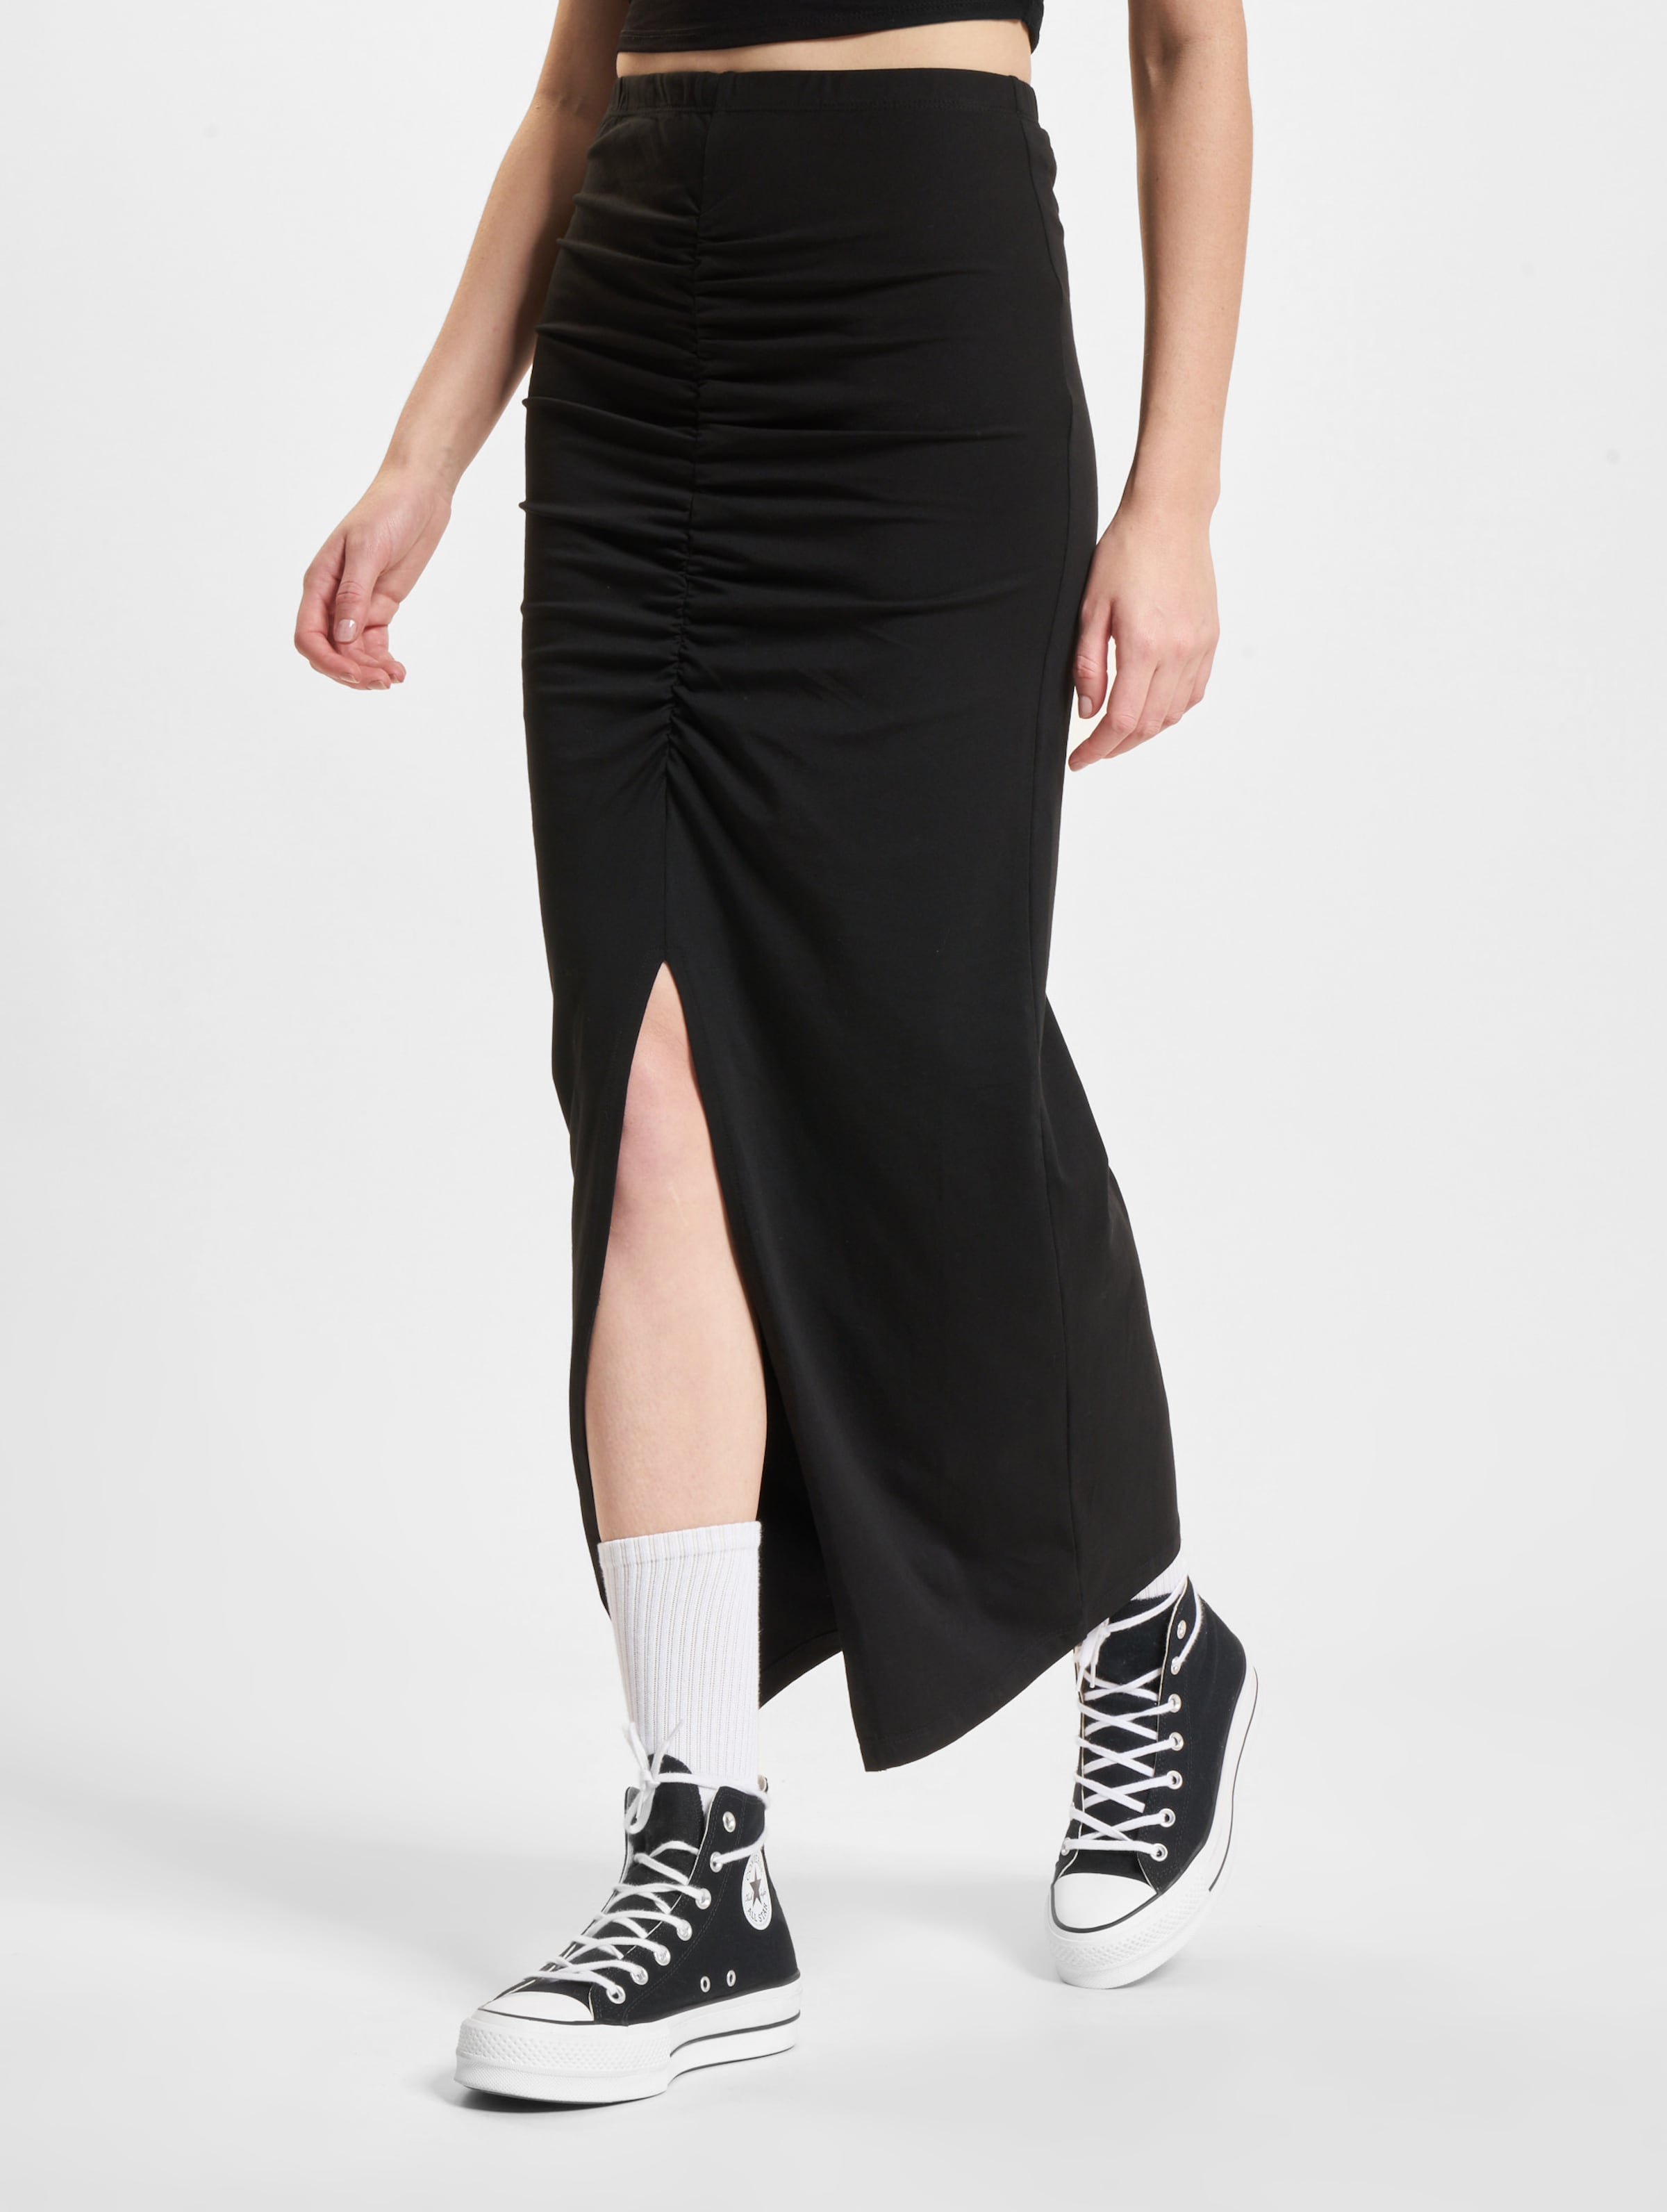 Only Angeel Jersey Life Ruching Skirt Frauen,Unisex op kleur zwart, Maat L